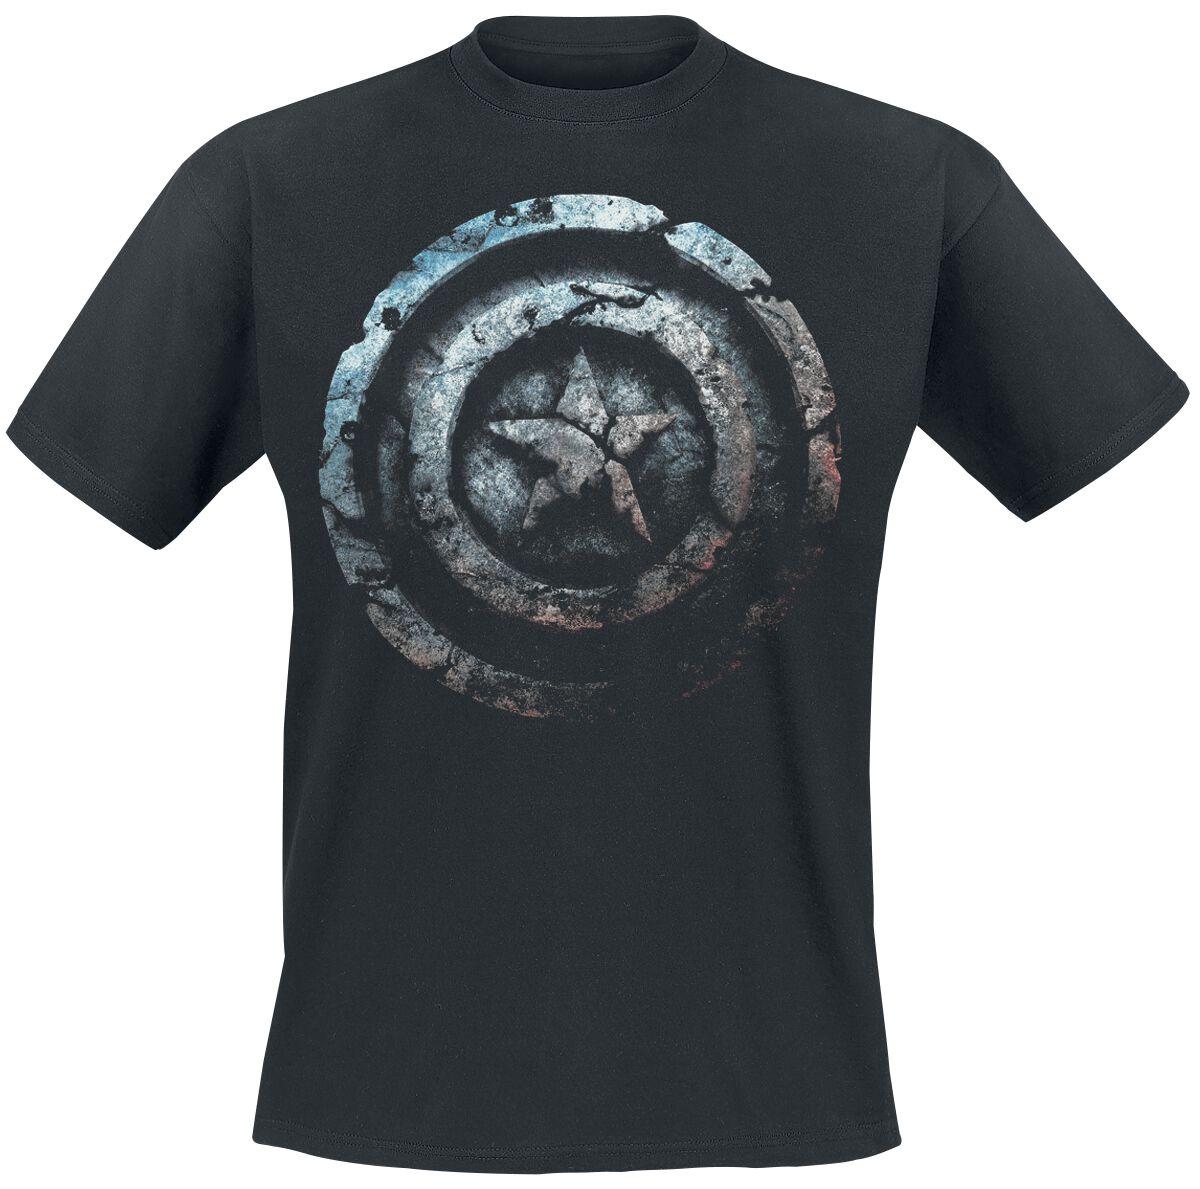 Captain America - Marvel T-Shirt - Stone Shield - S bis 4XL - für Männer - Größe S - schwarz  - EMP exklusives Merchandise!